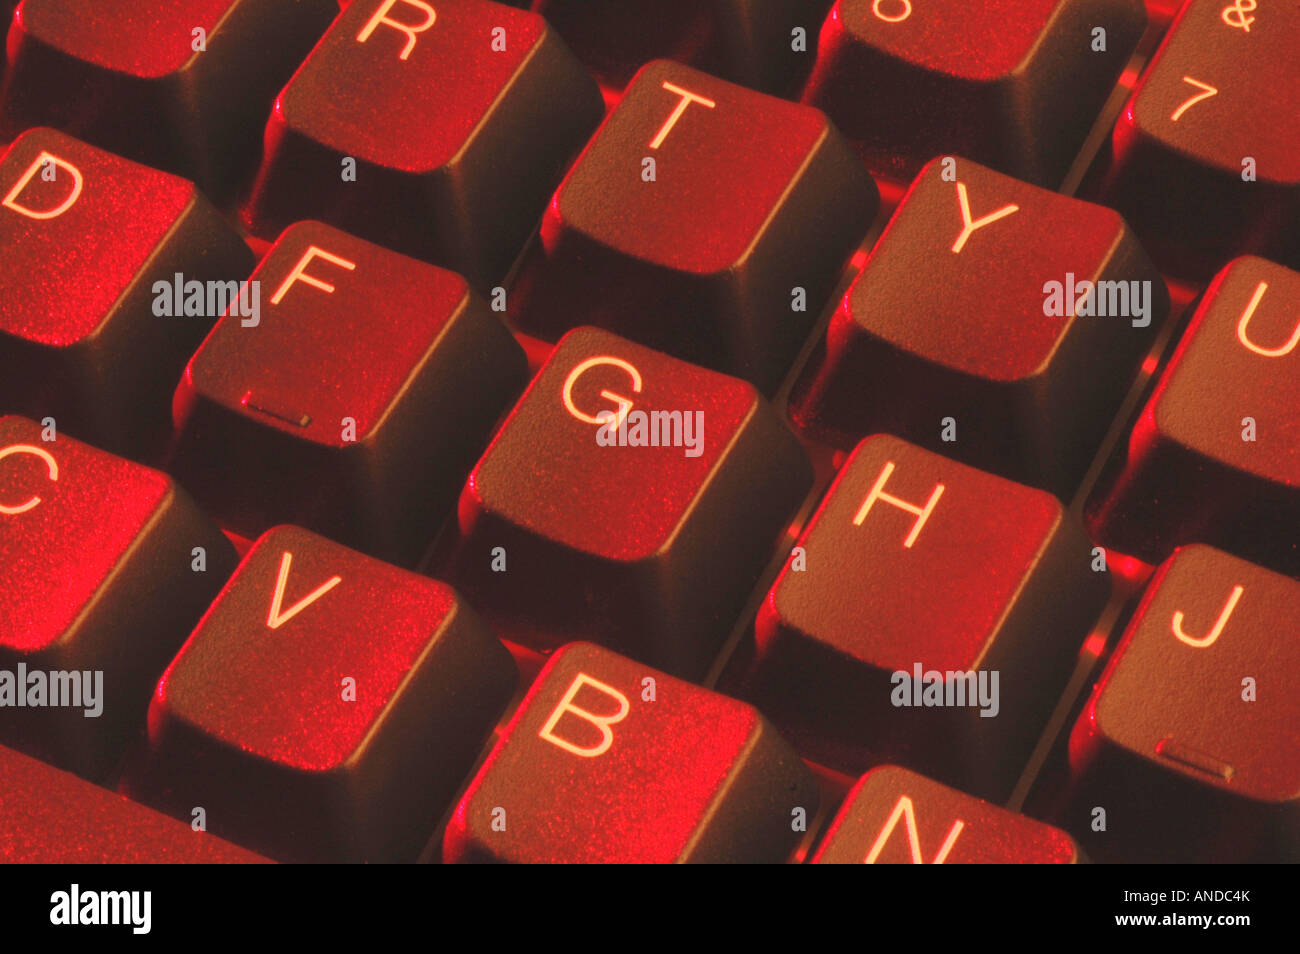 Calcolatore rosso con tastiera alfanumerica tasti qwerty Foto Stock